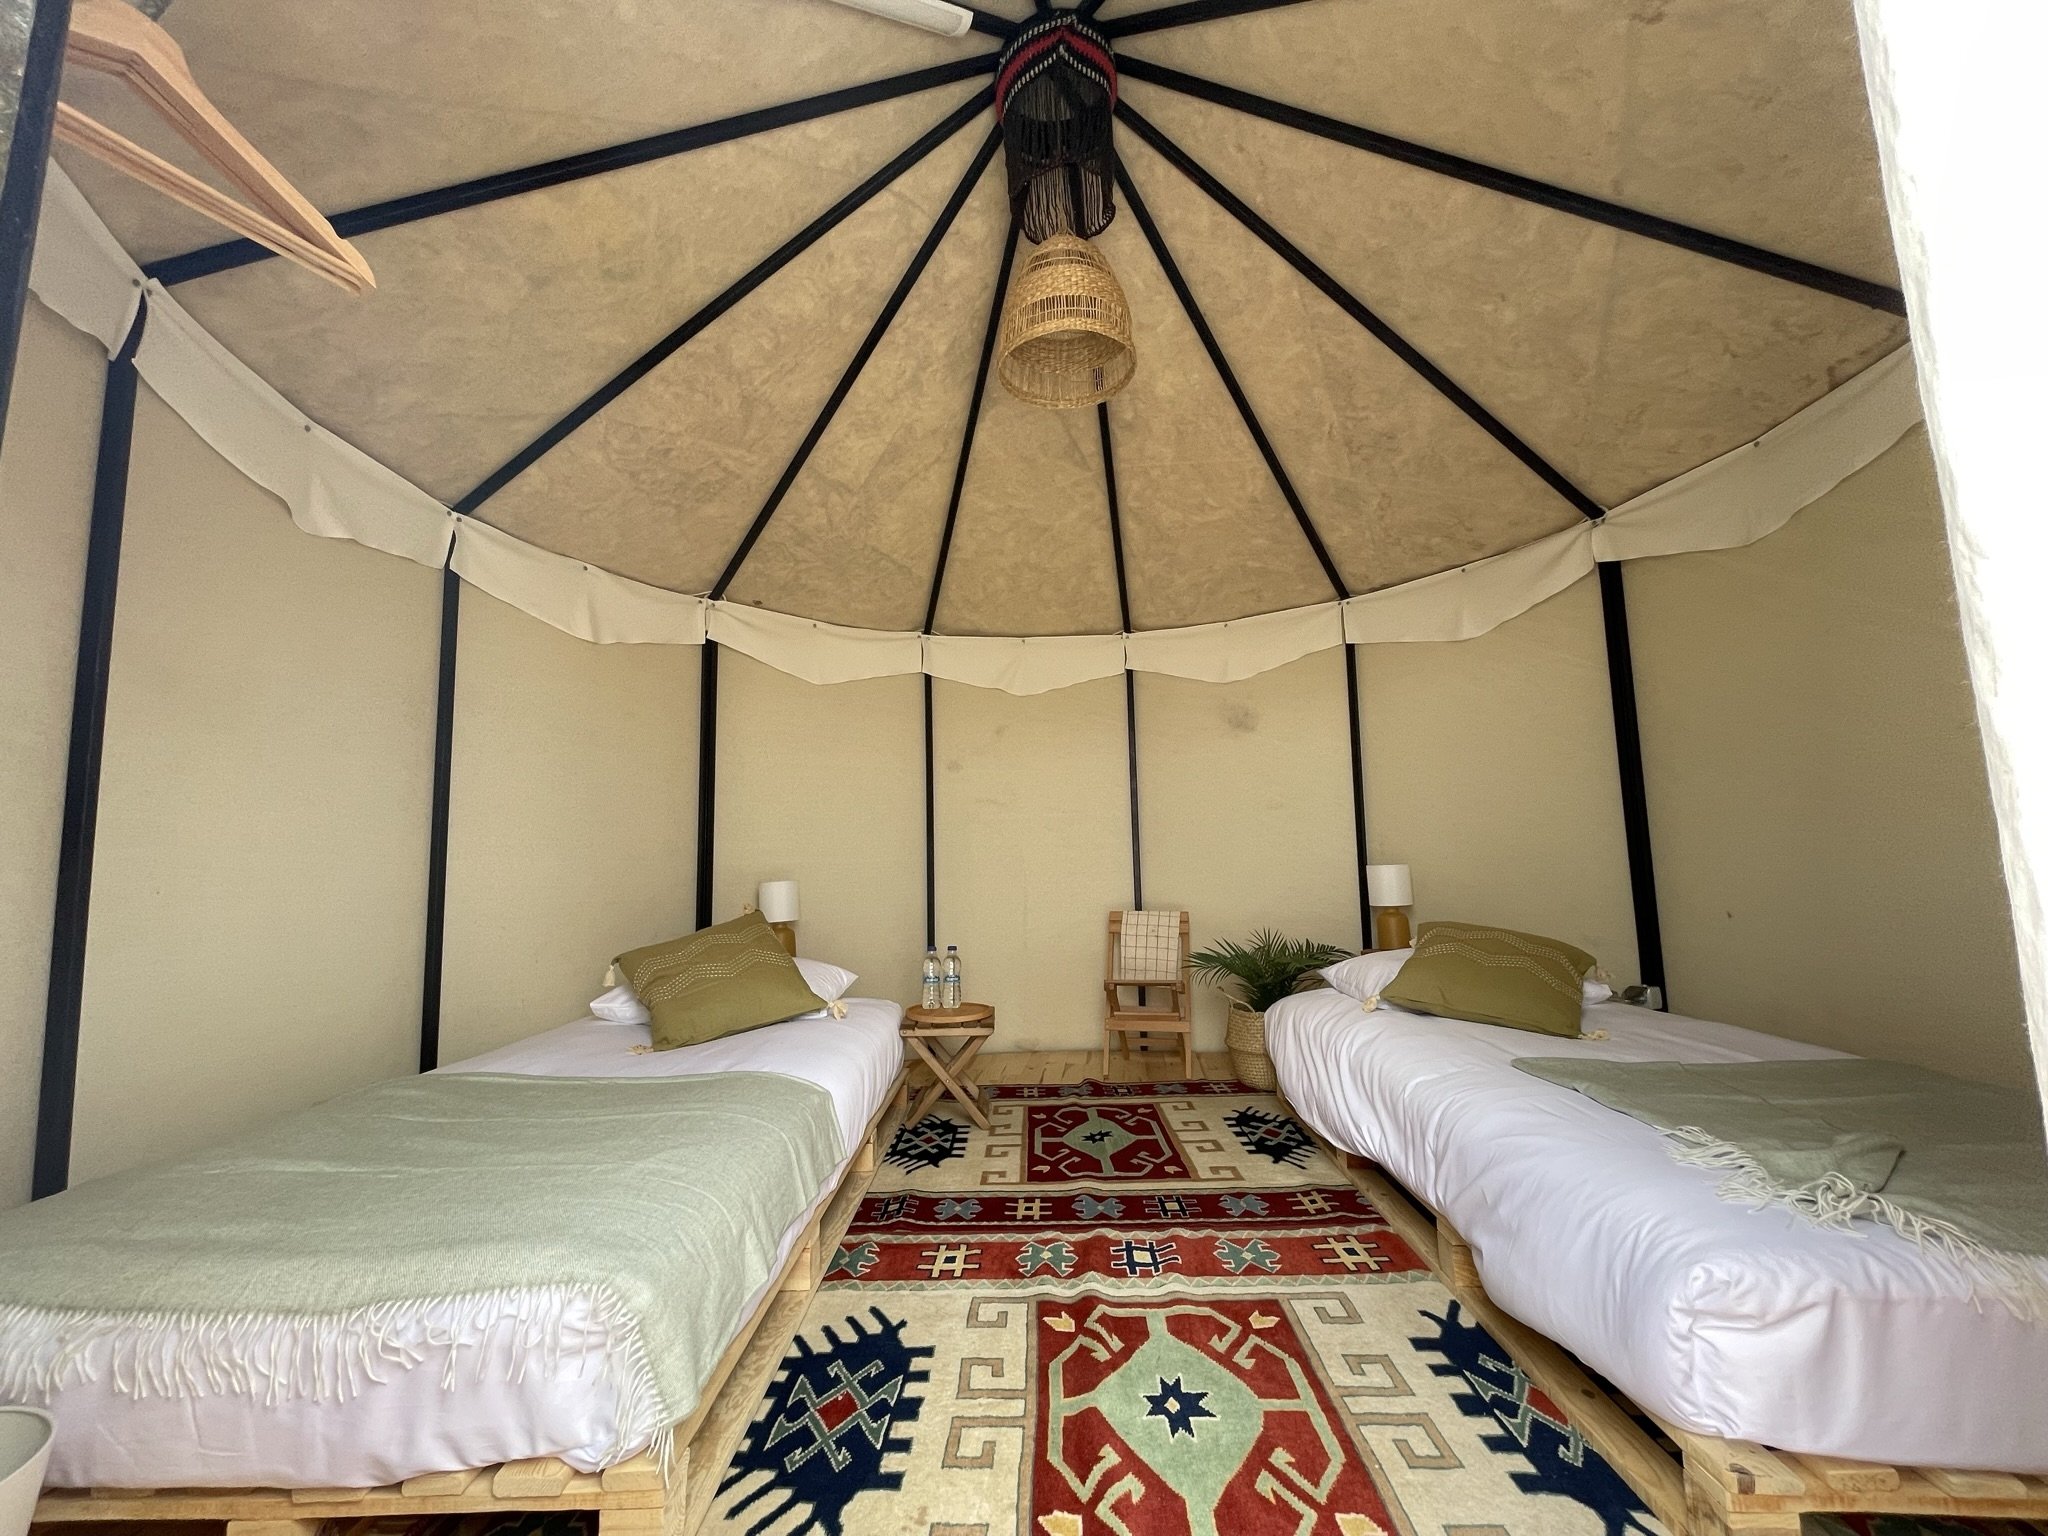 Lake Tuz Nomad Camping di distrik Eskil Aksaray di Turki tengah menawarkan kesempatan liburan alternatif, Aksaray, Turki, 12 Mei 2022. (AA Photo)